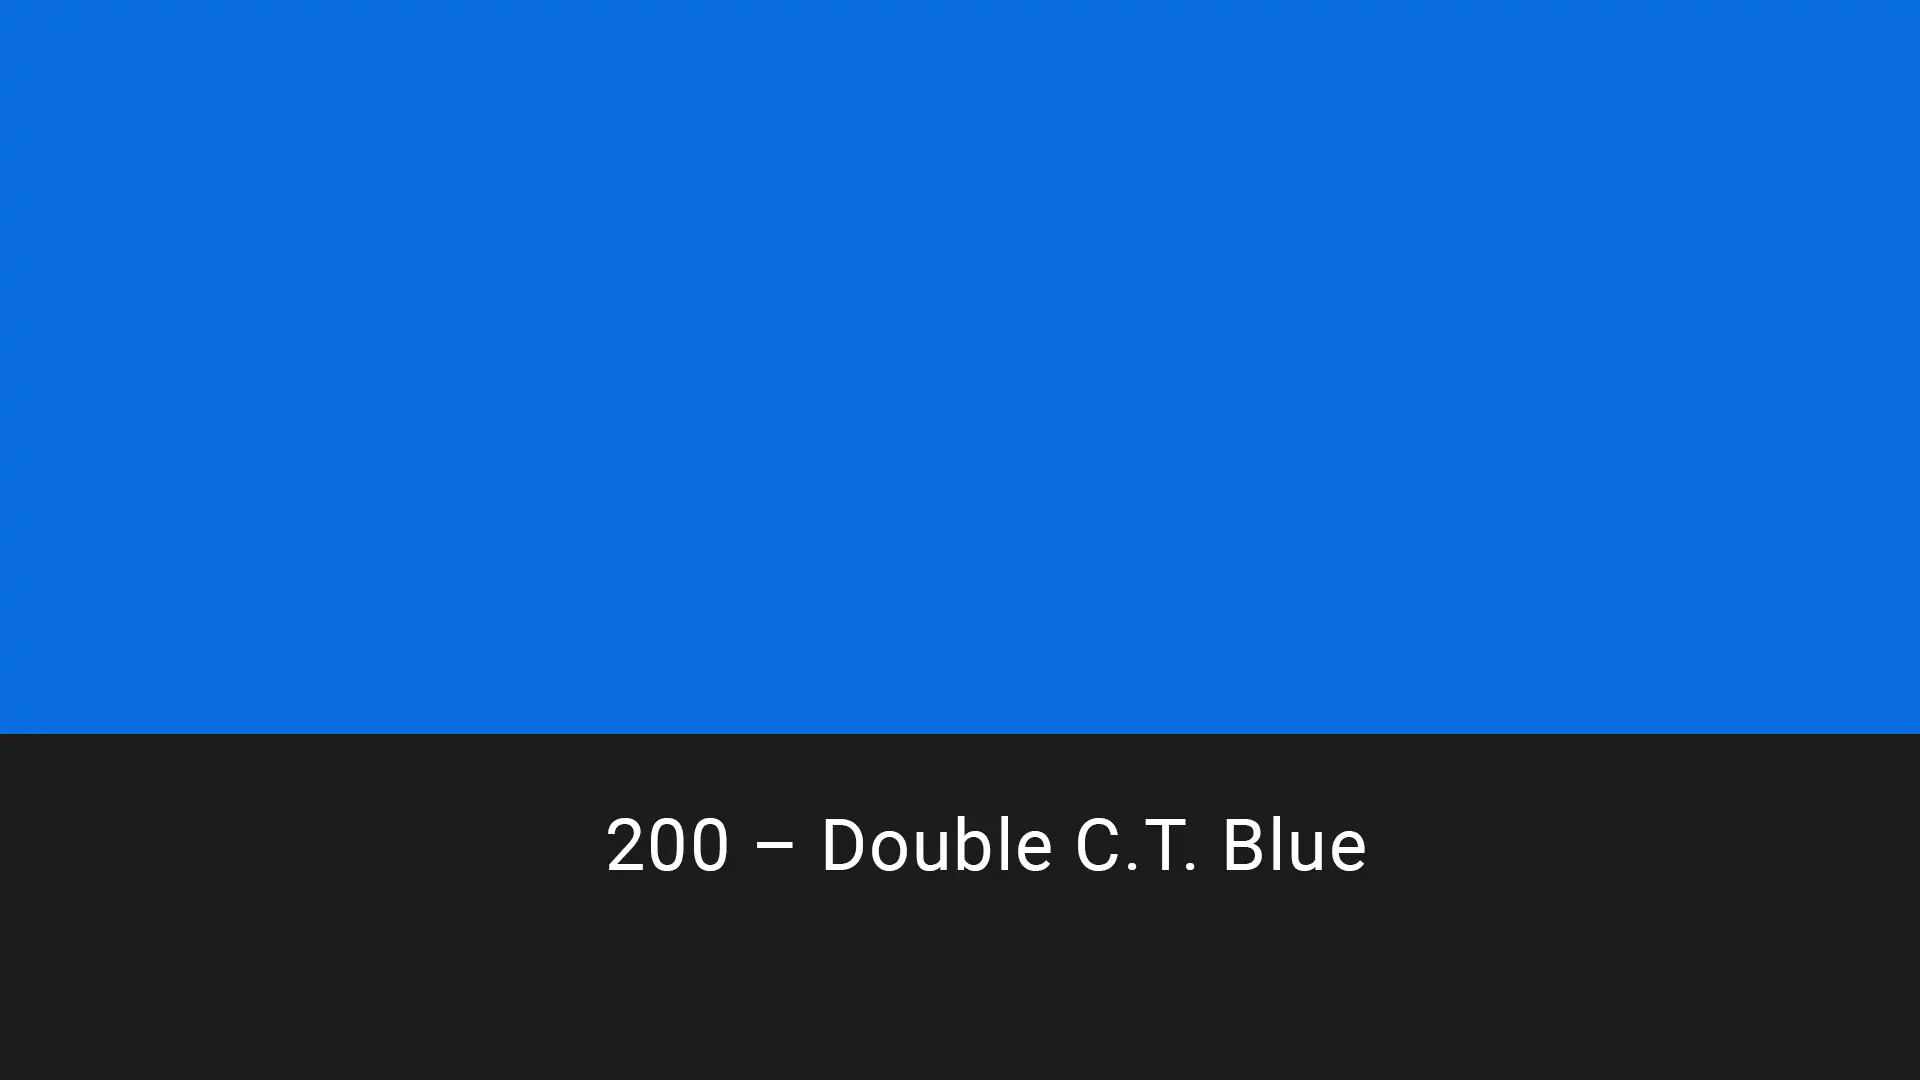 Cotech filters 200 Double C.T. Blue